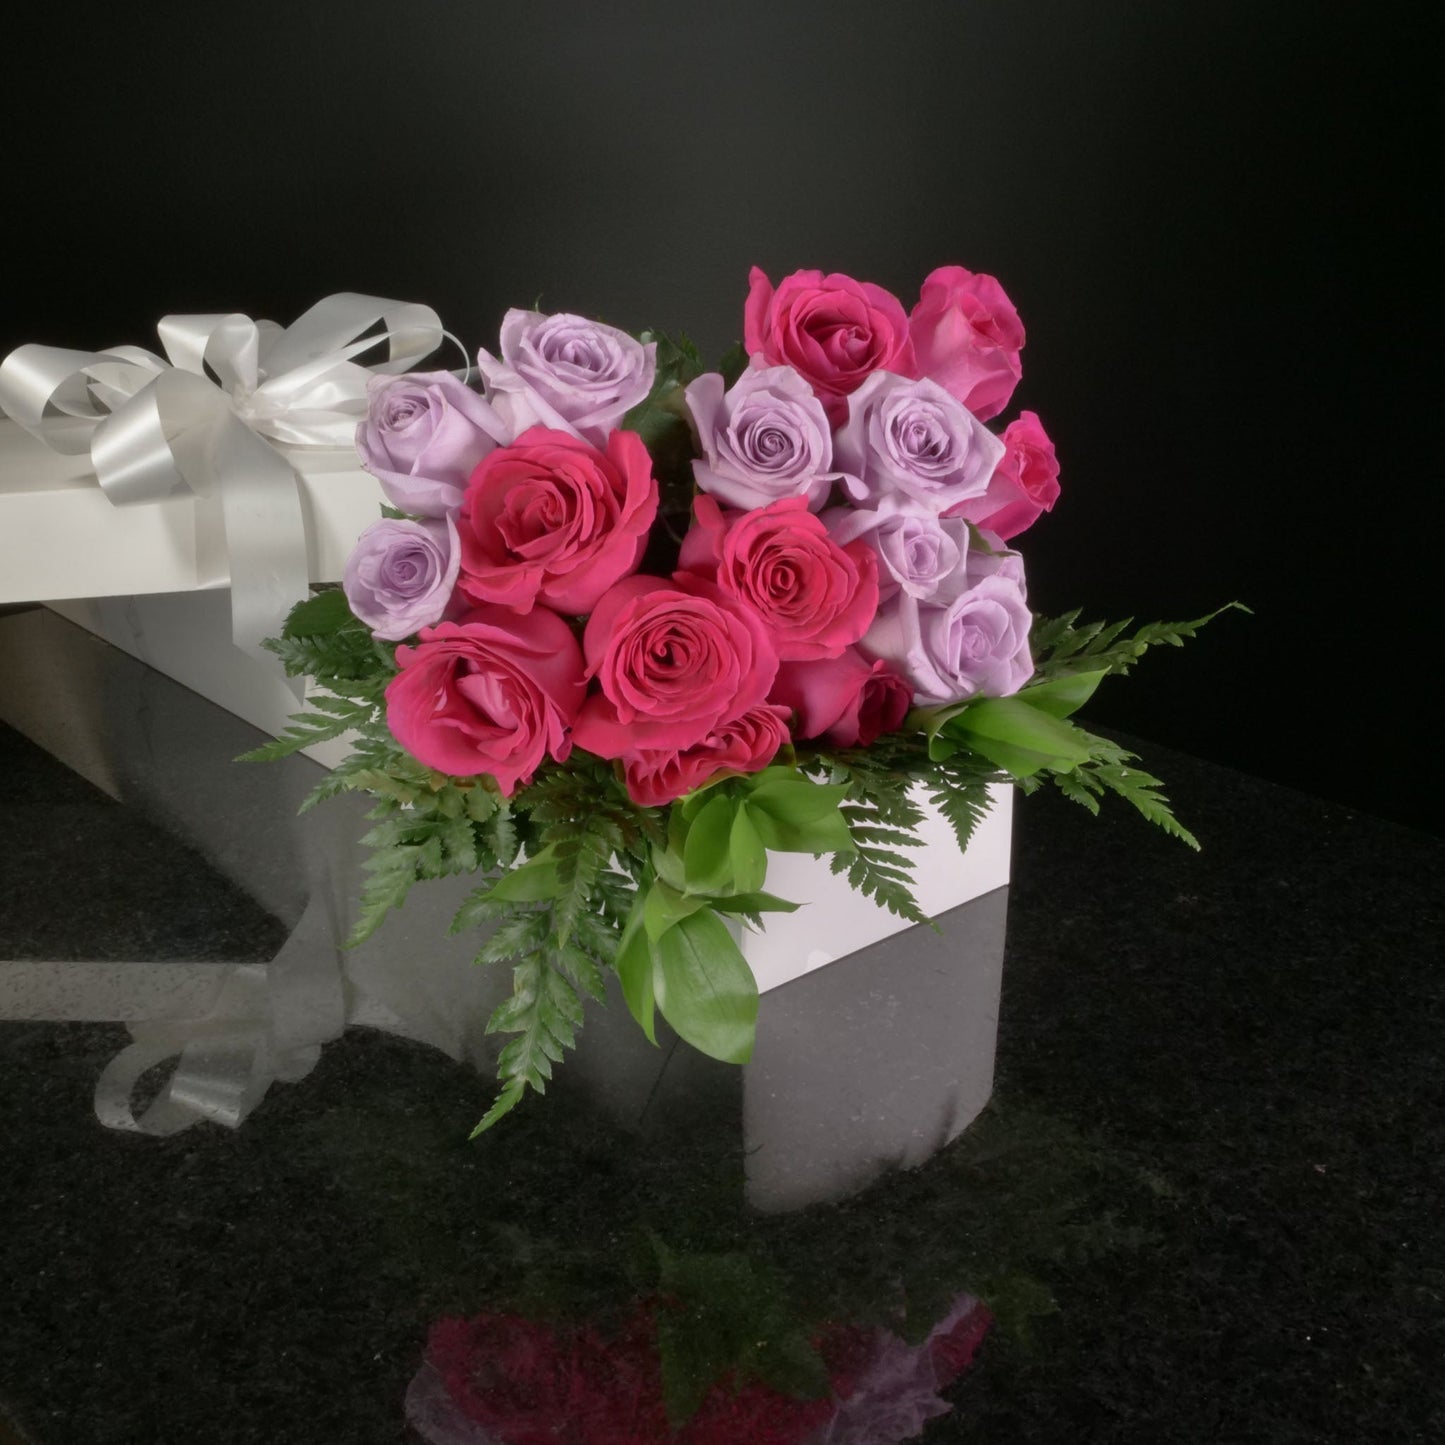  18 Roses / Boxed / Basic